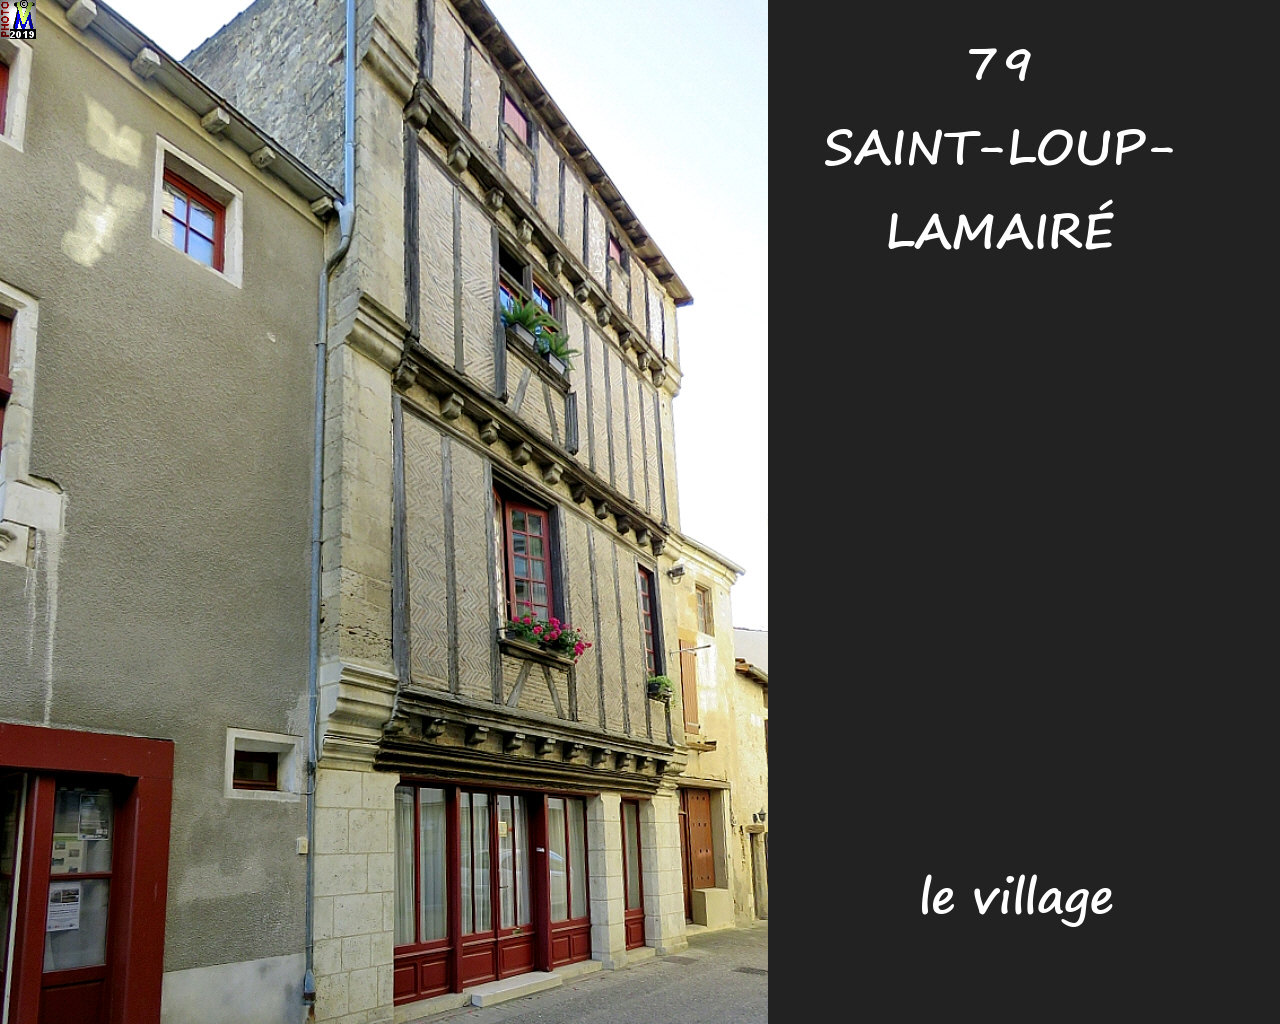 79StLOUP-LAMAIRE_village_1012.jpg